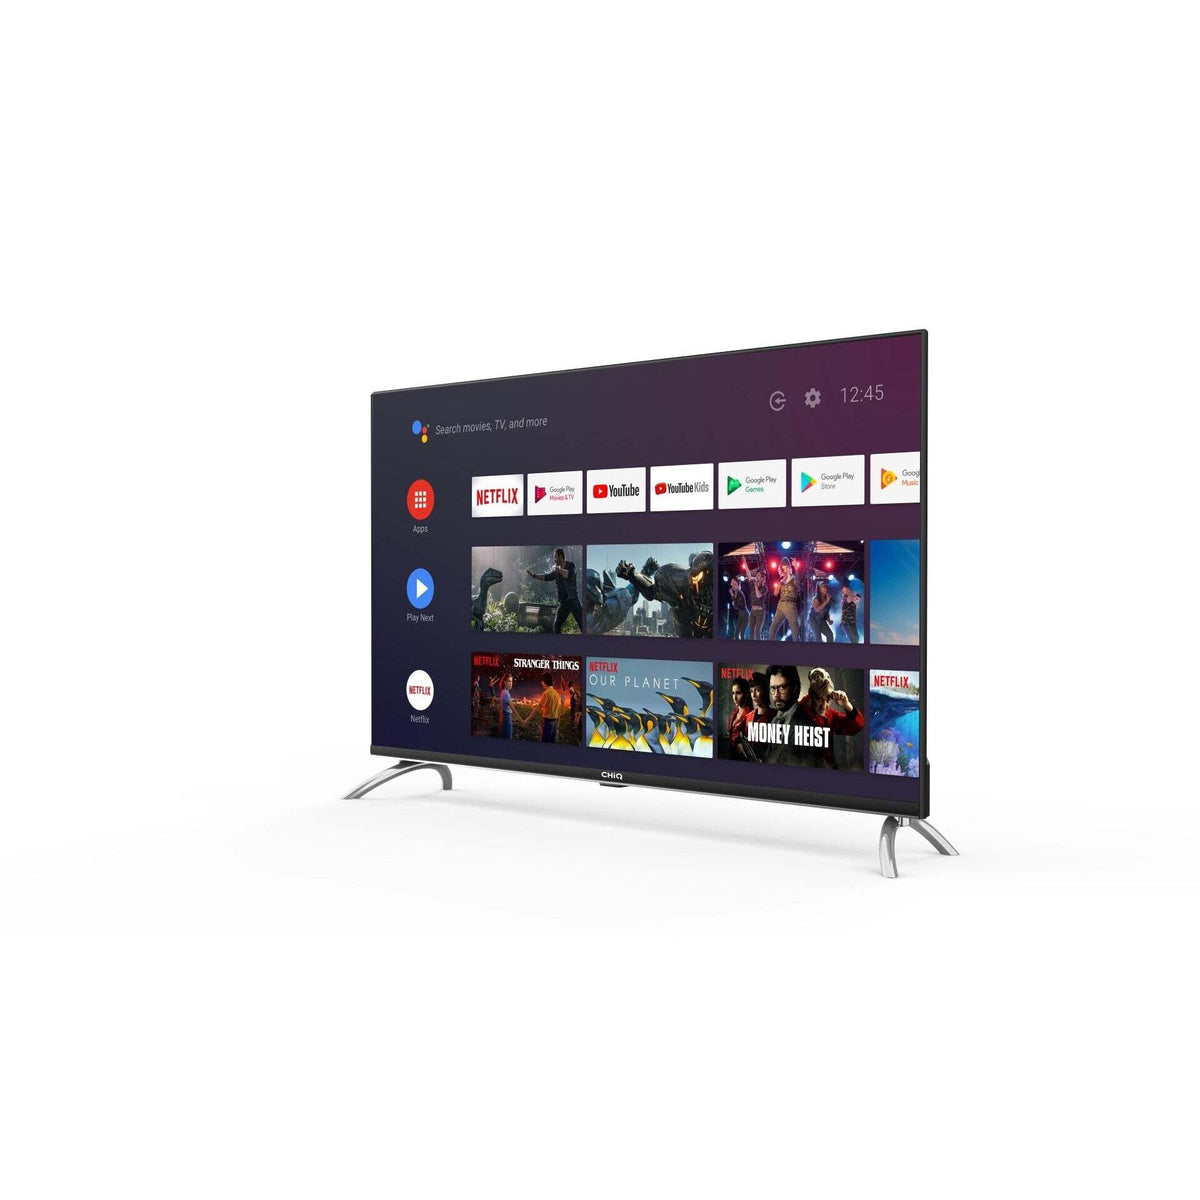 Smart televízor CHiQ L40H7A 2021 / 40&quot; (102 cm)